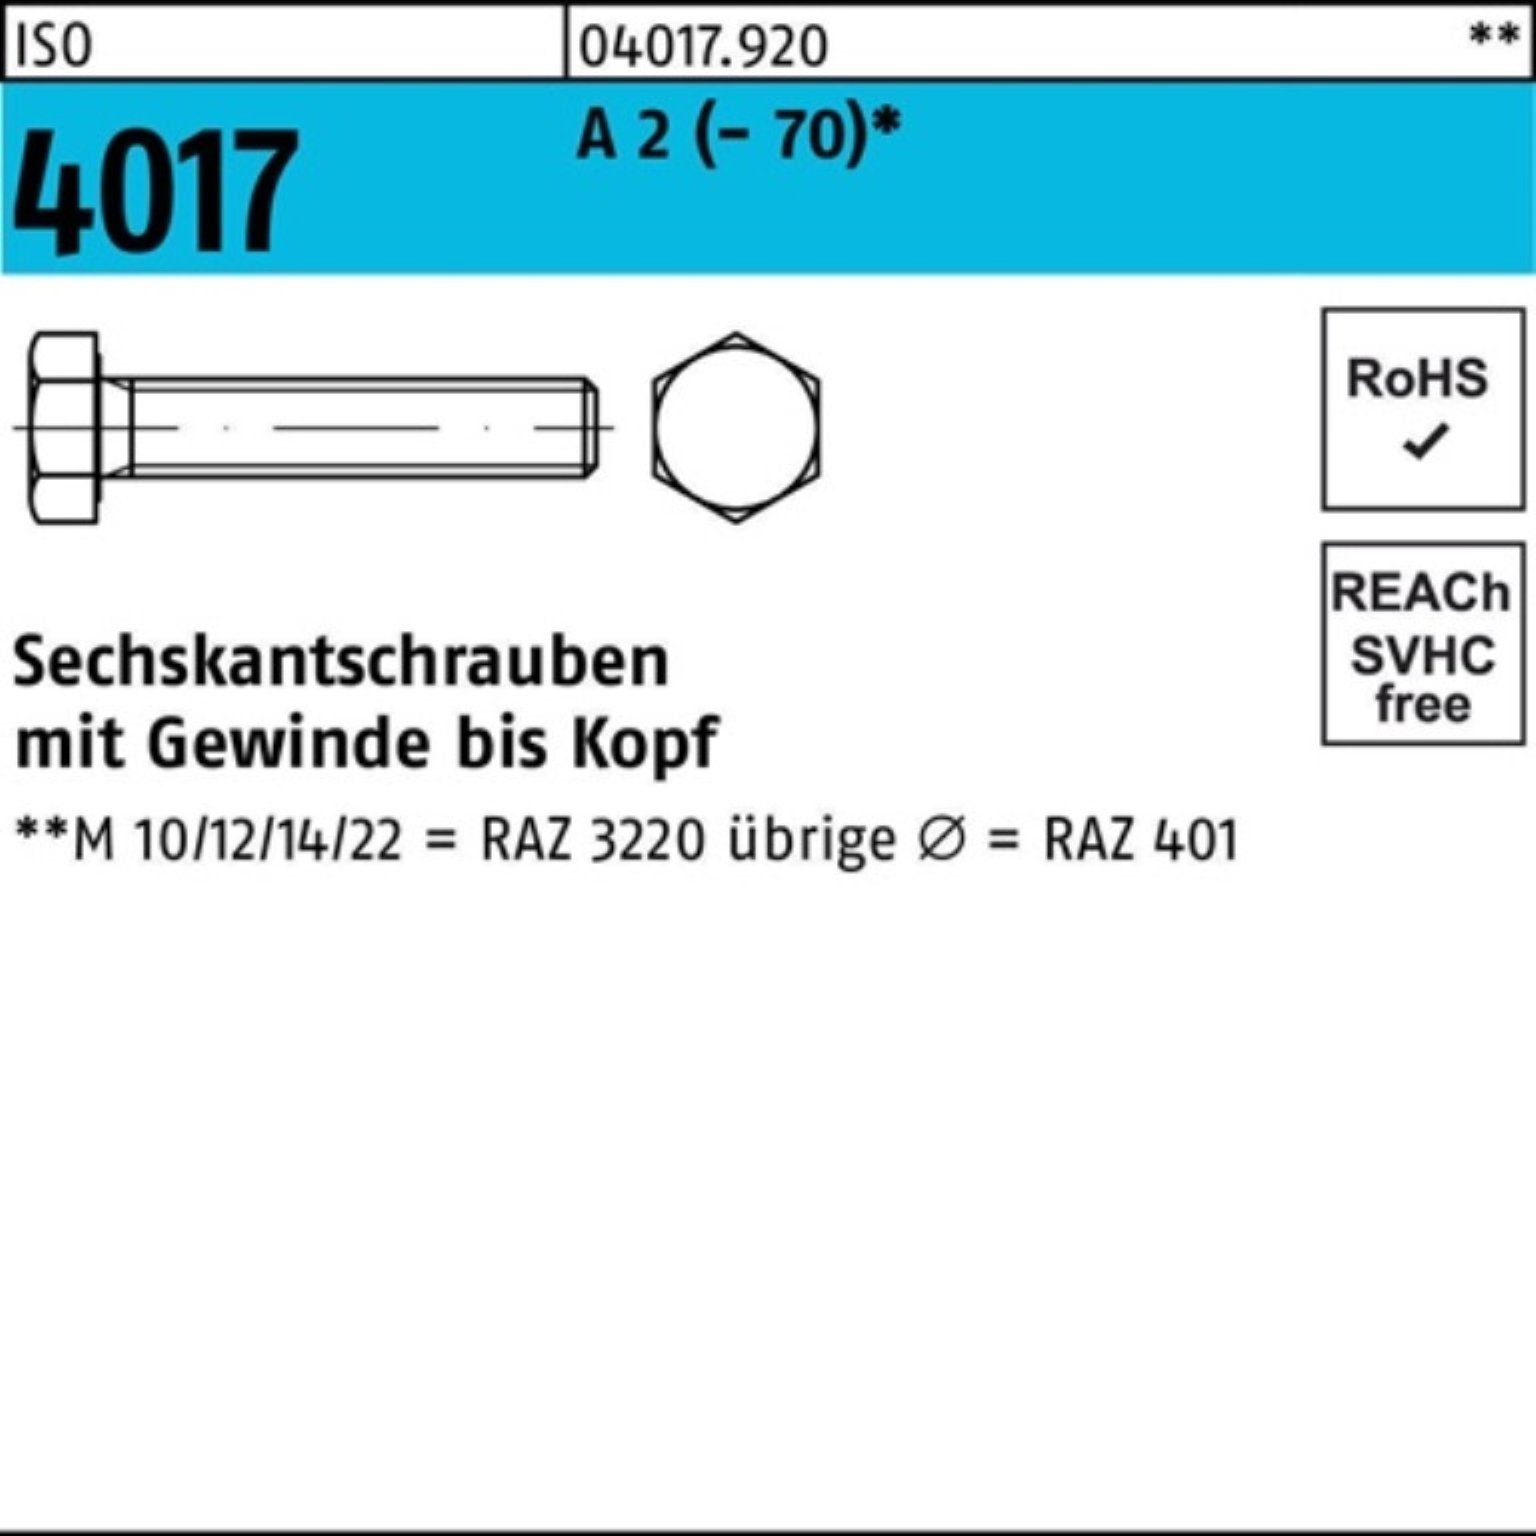 Bufab Sechskantschraube 100er Pack Sechskantschraube ISO 4017 VG M8x 12 A 2 (70) 100 Stück